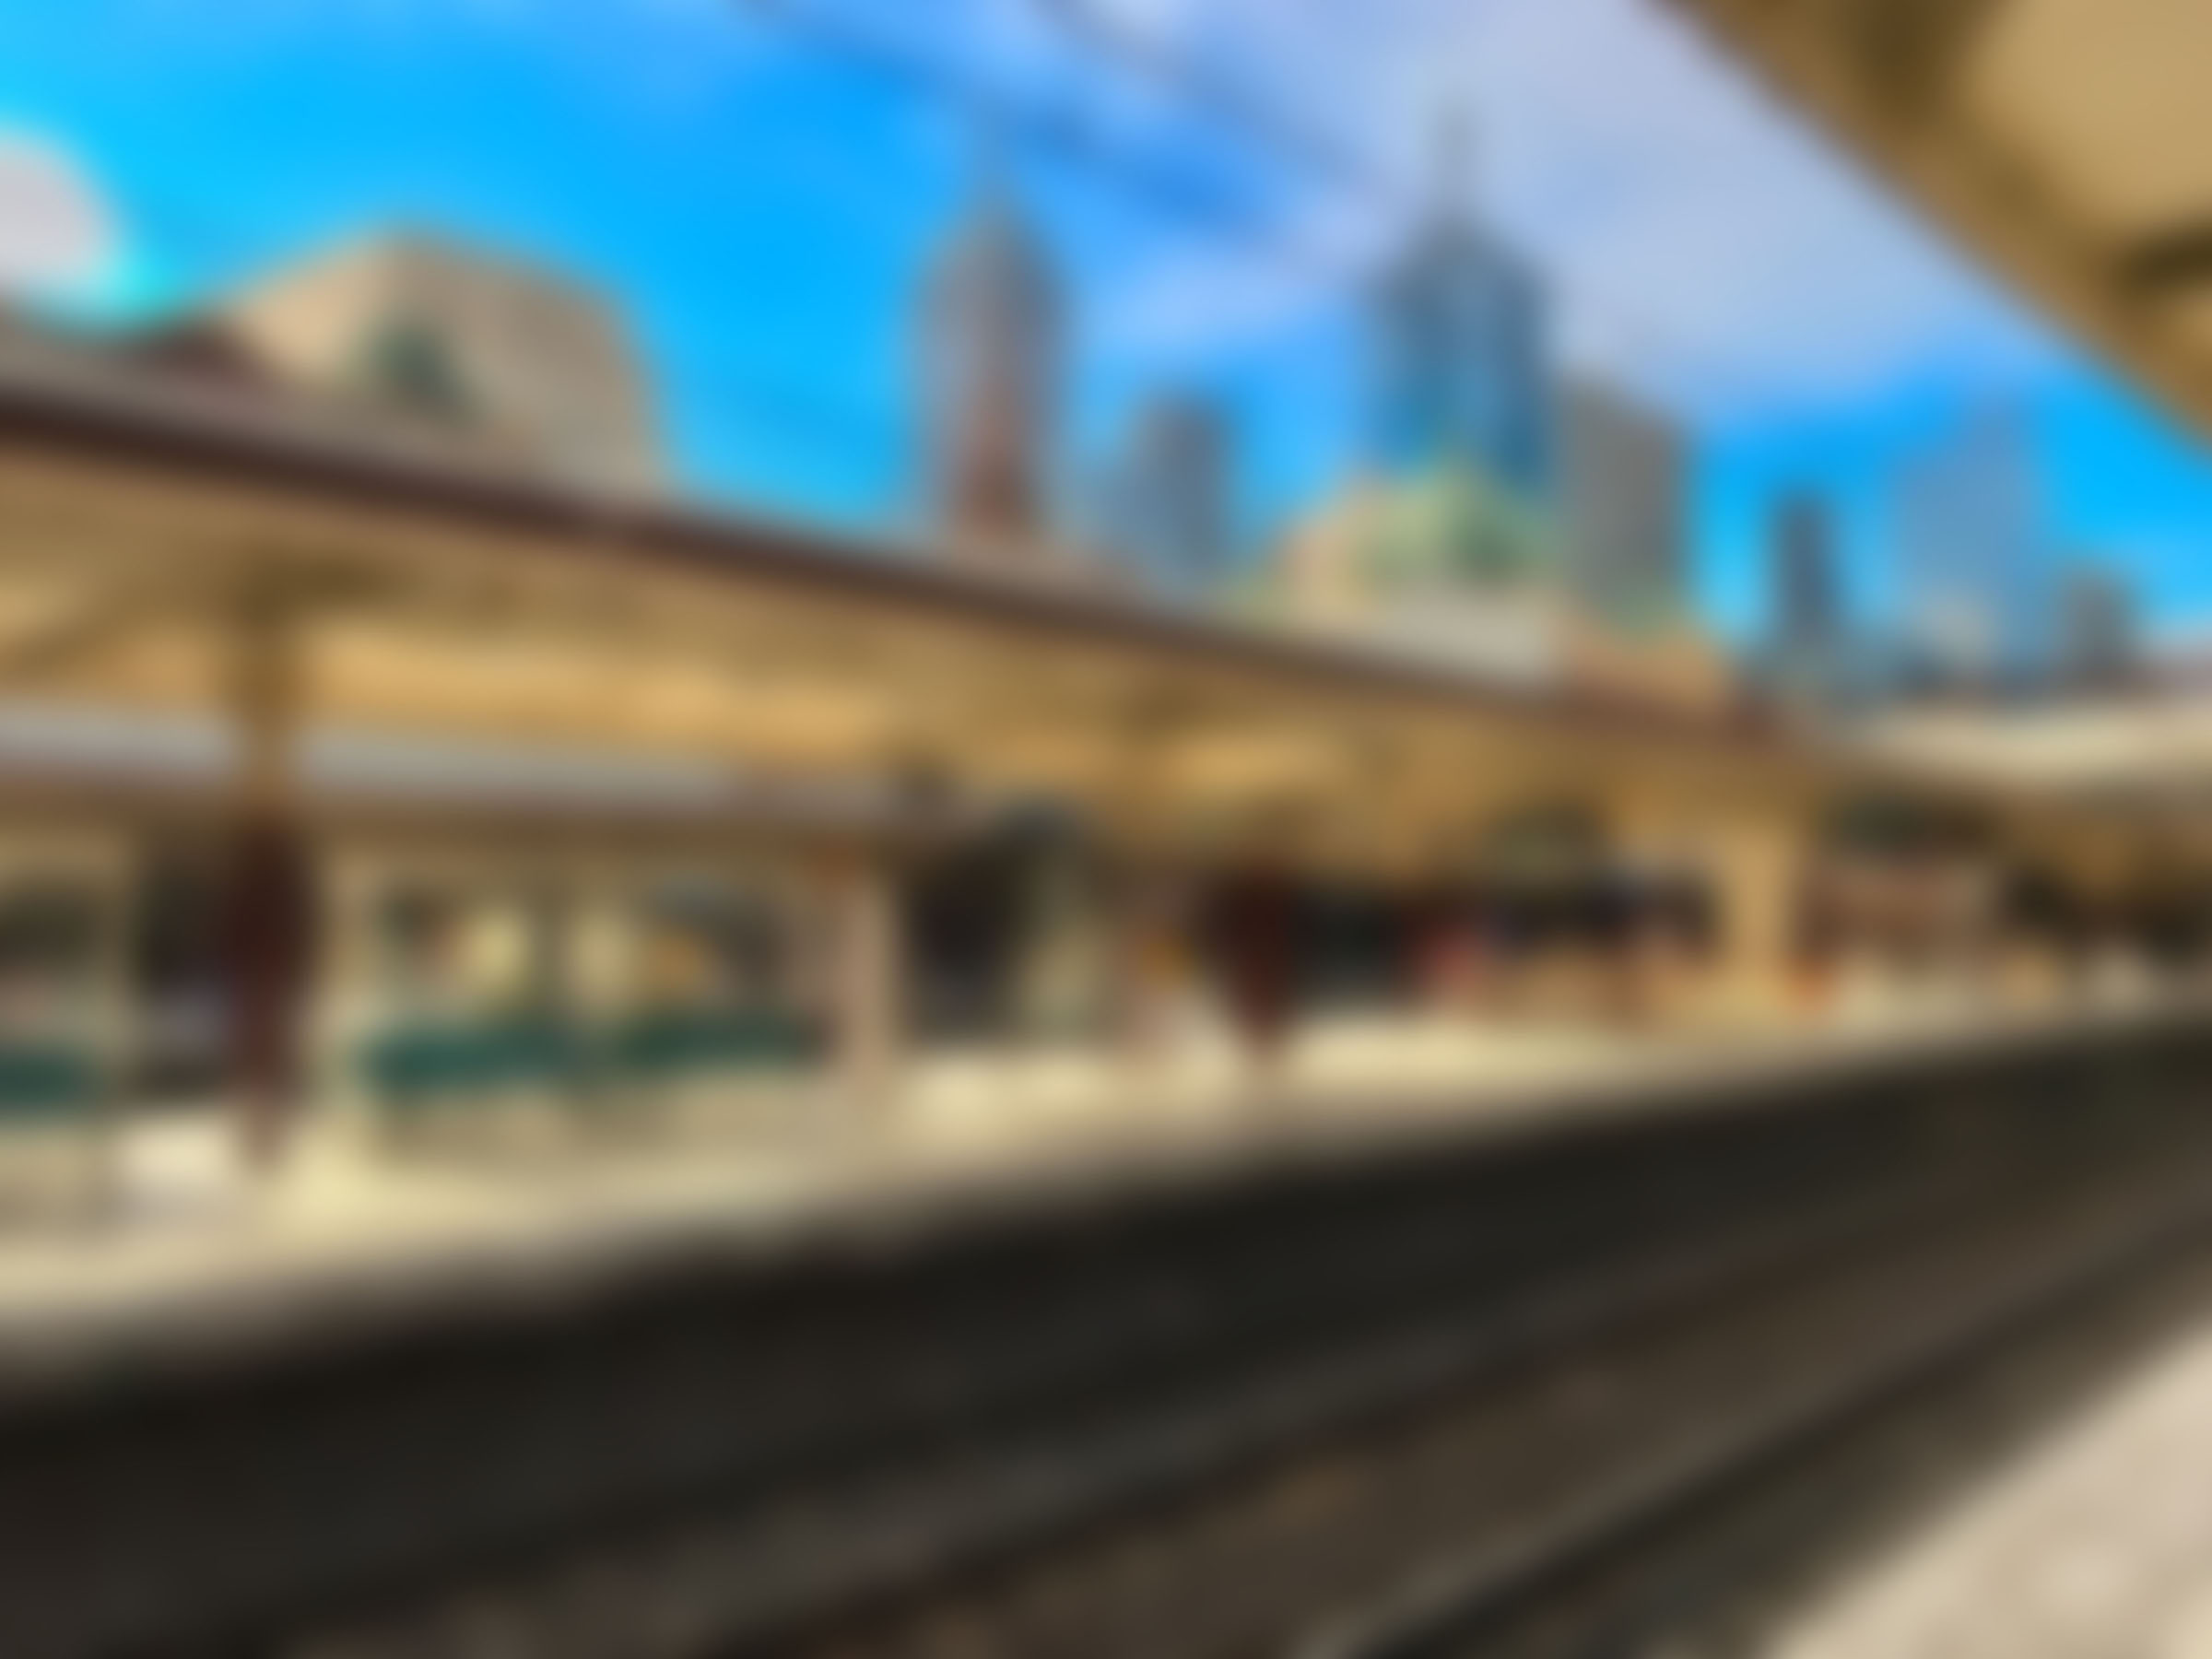 Website Background 01 [Flinders St Station Platform]